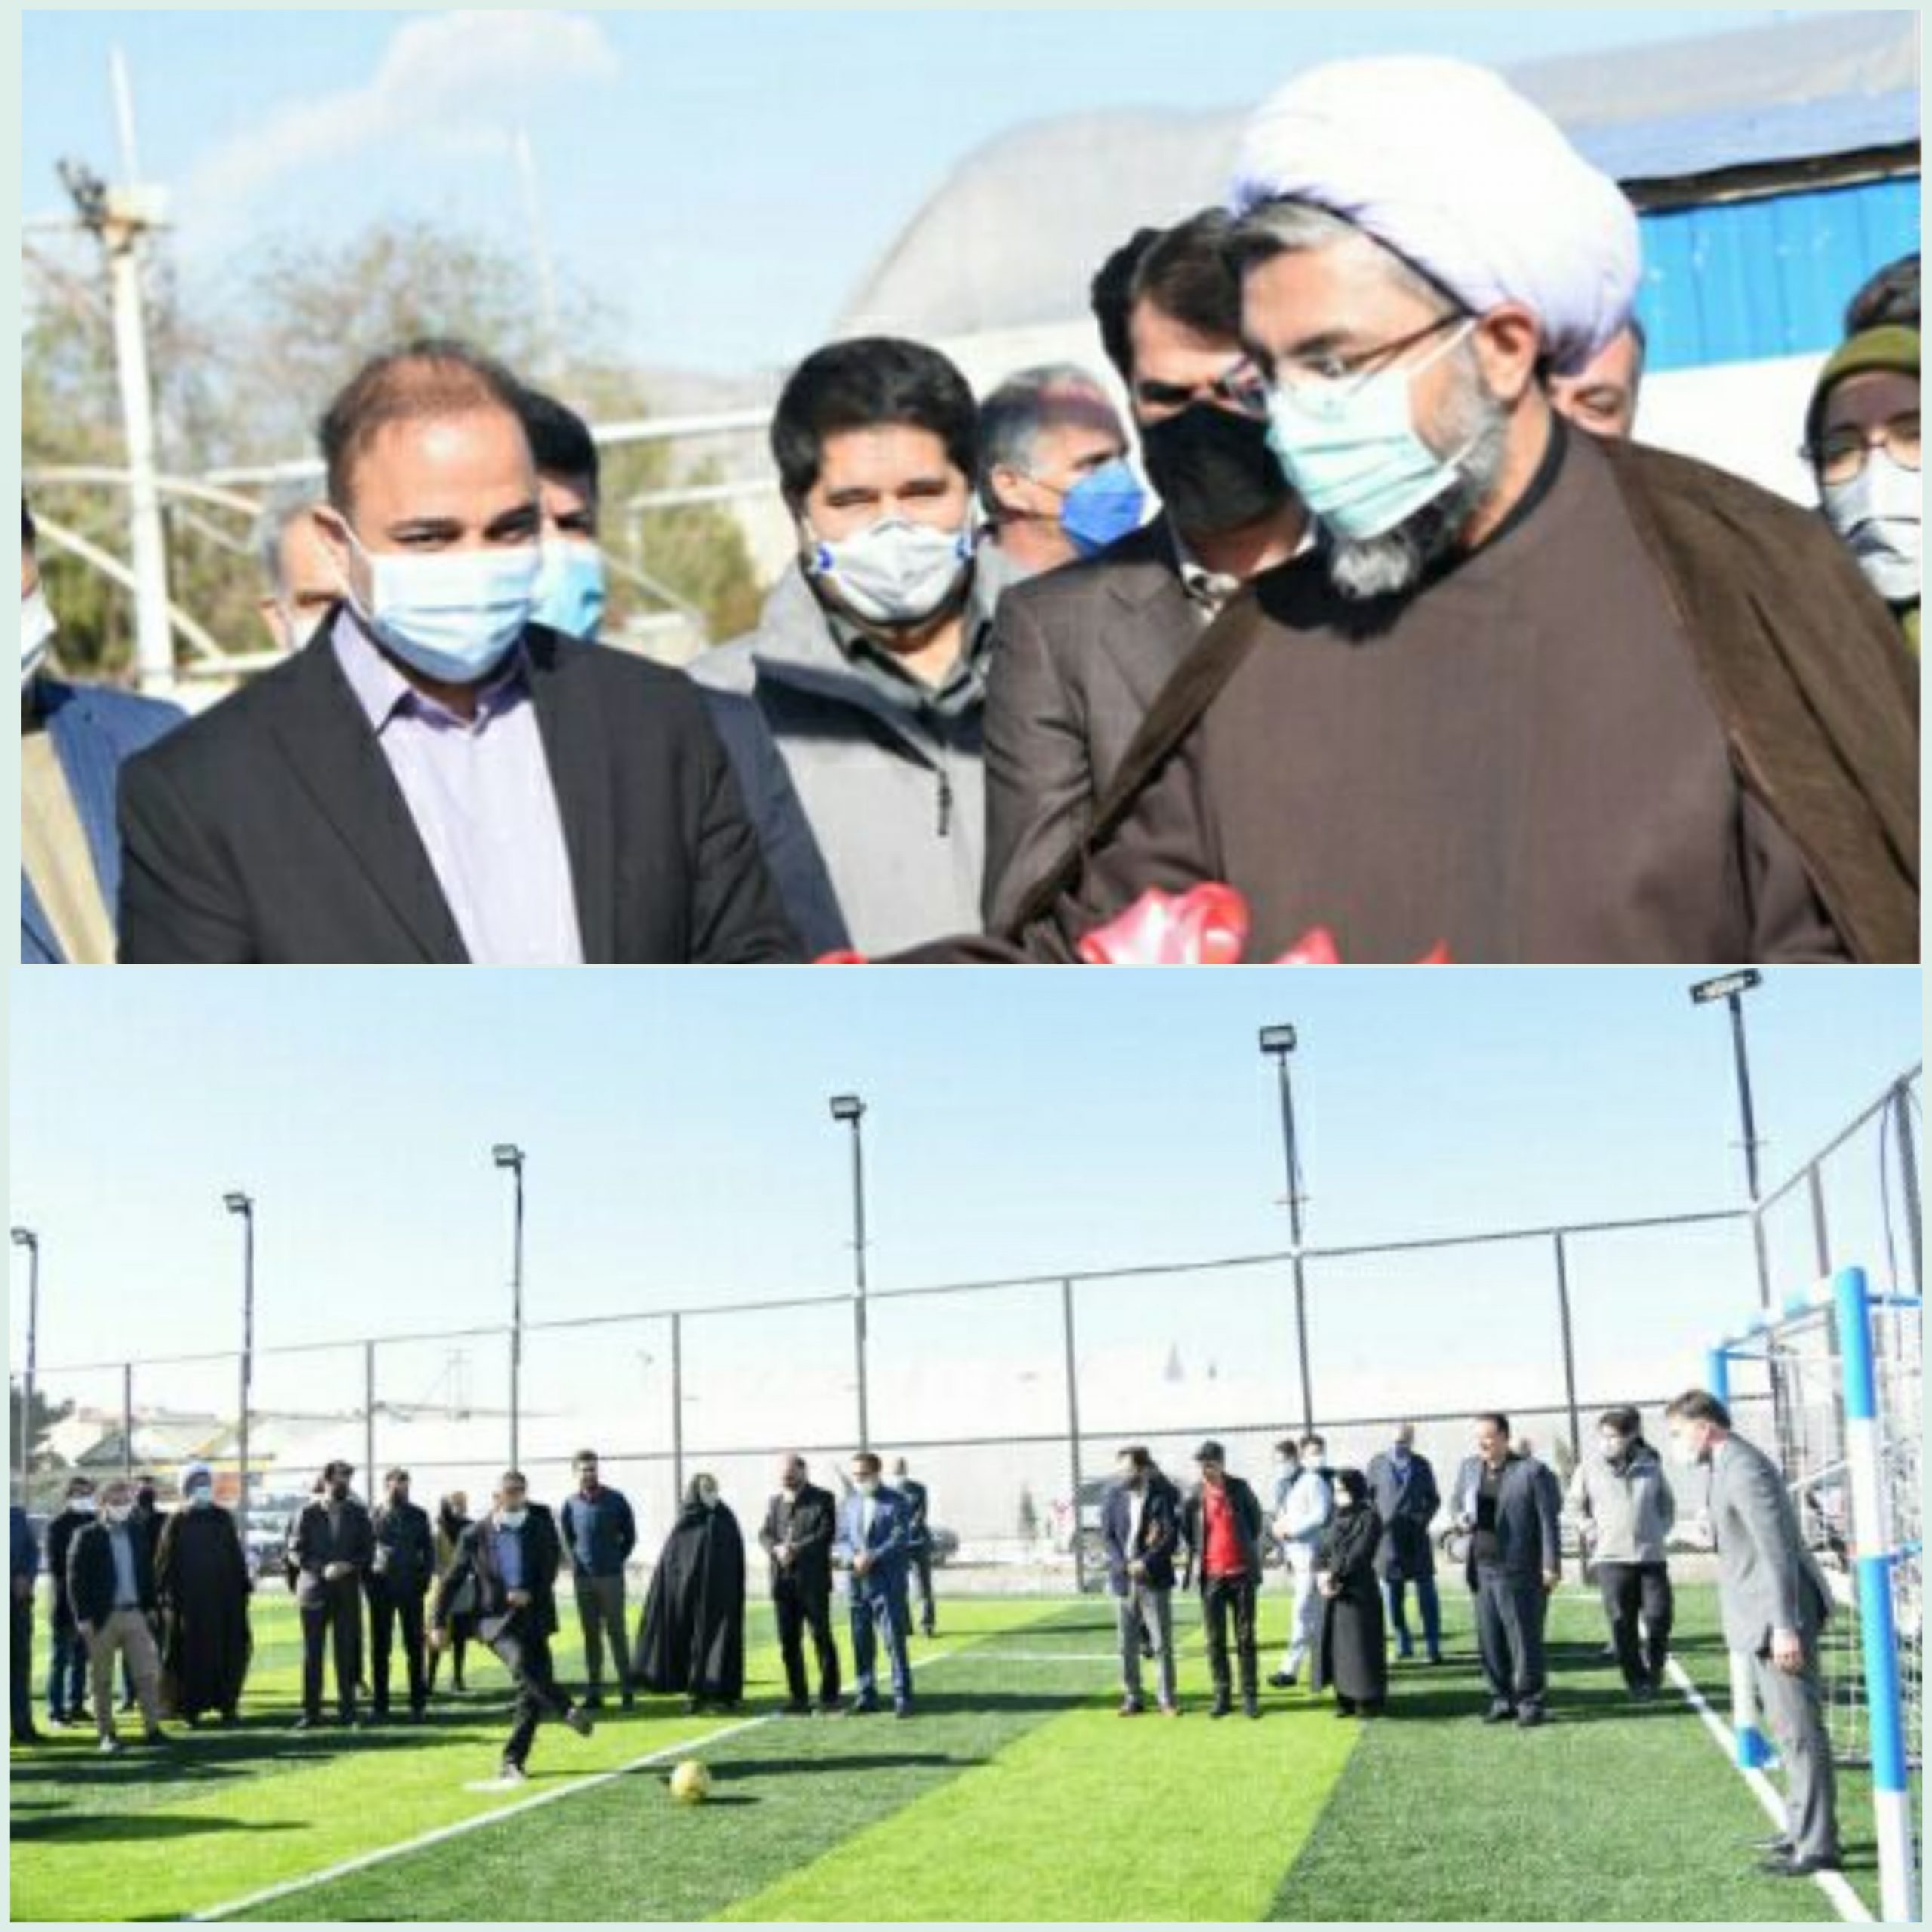 افتتاح زمین فوتبال چمن مصنوعی در مجتمع گلشهر البرز